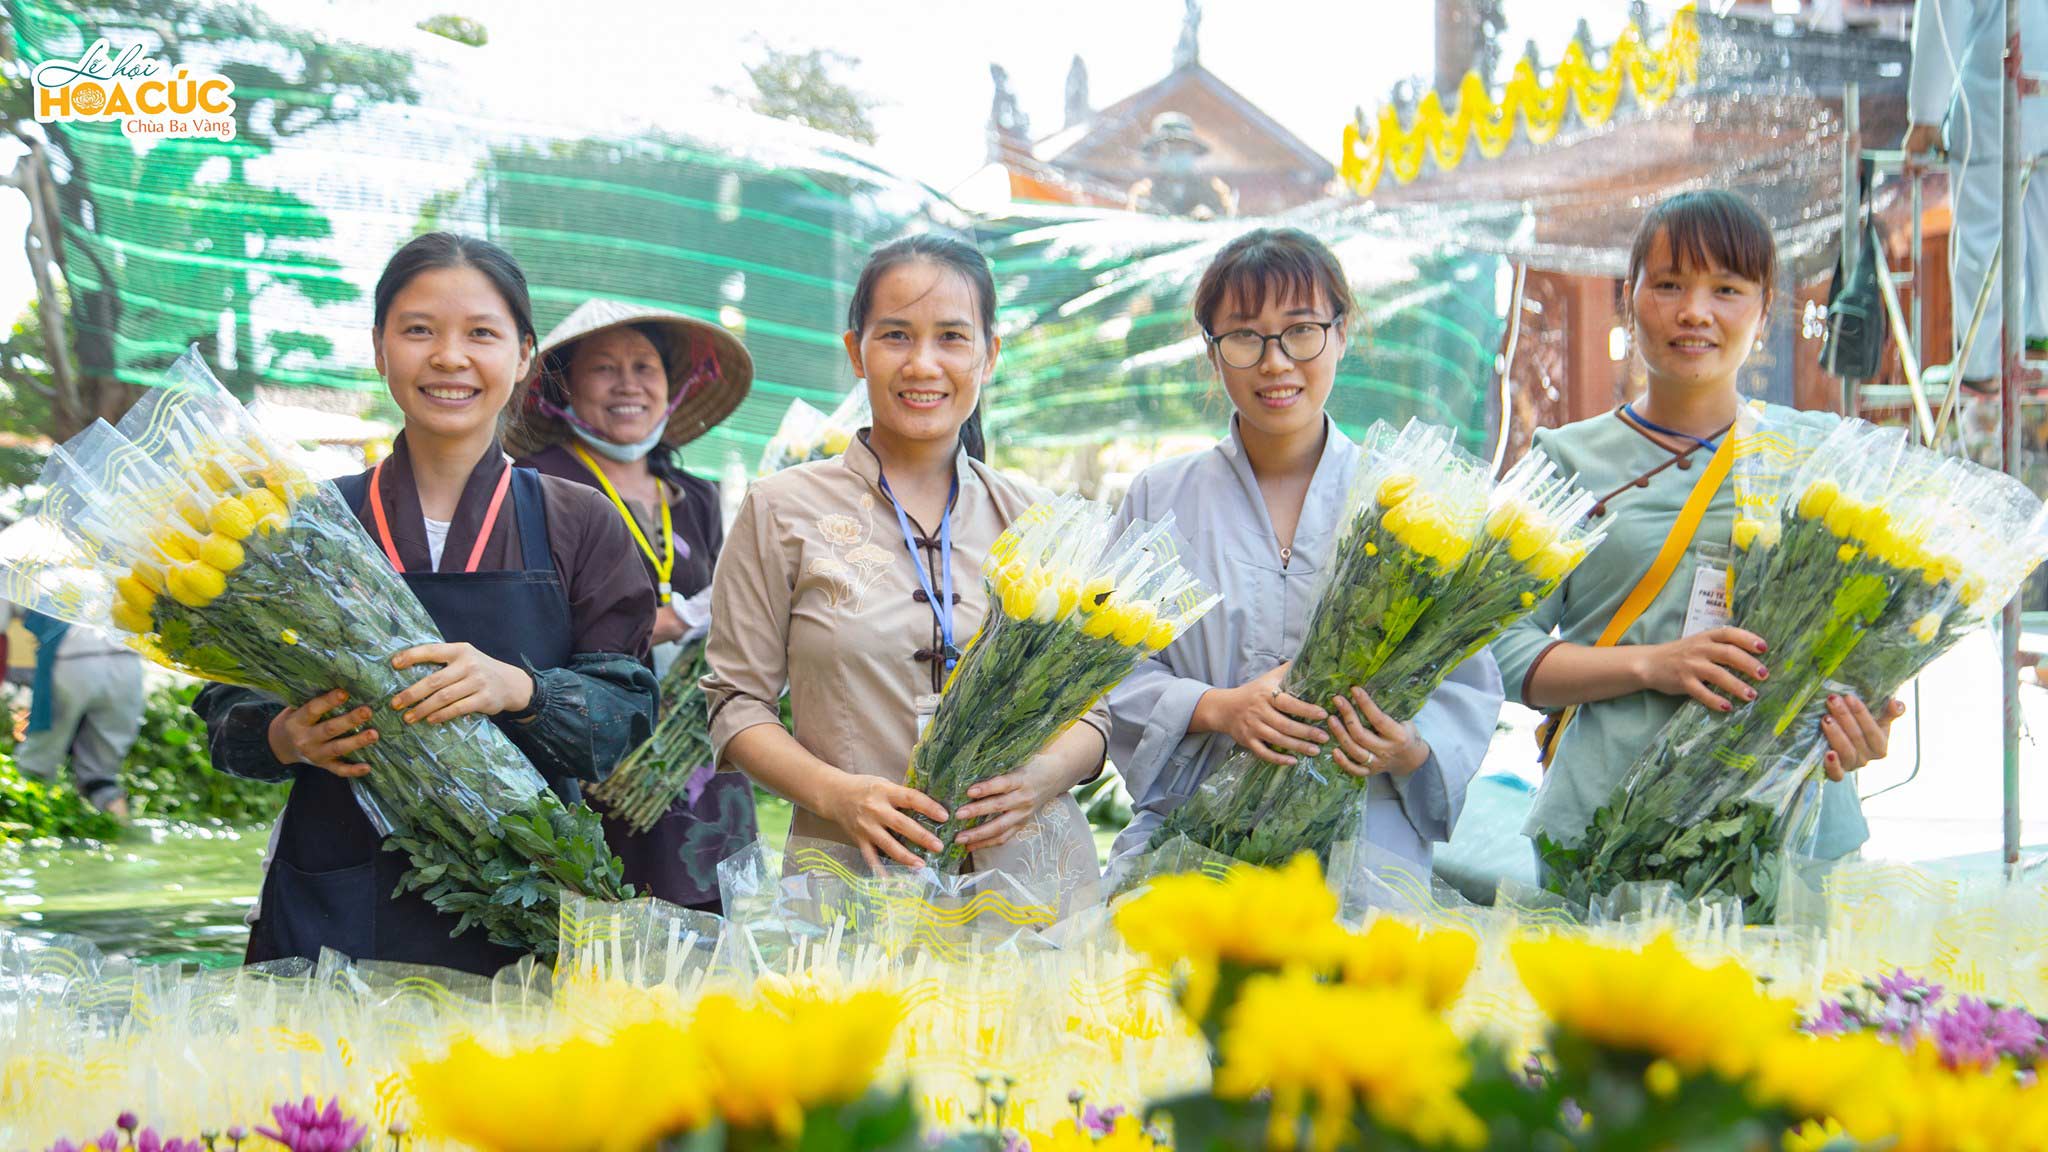 Những bông hoa cúc đầu tiên trong Lễ hội Hoa Cúc đã về đến chùa Ba Vàng